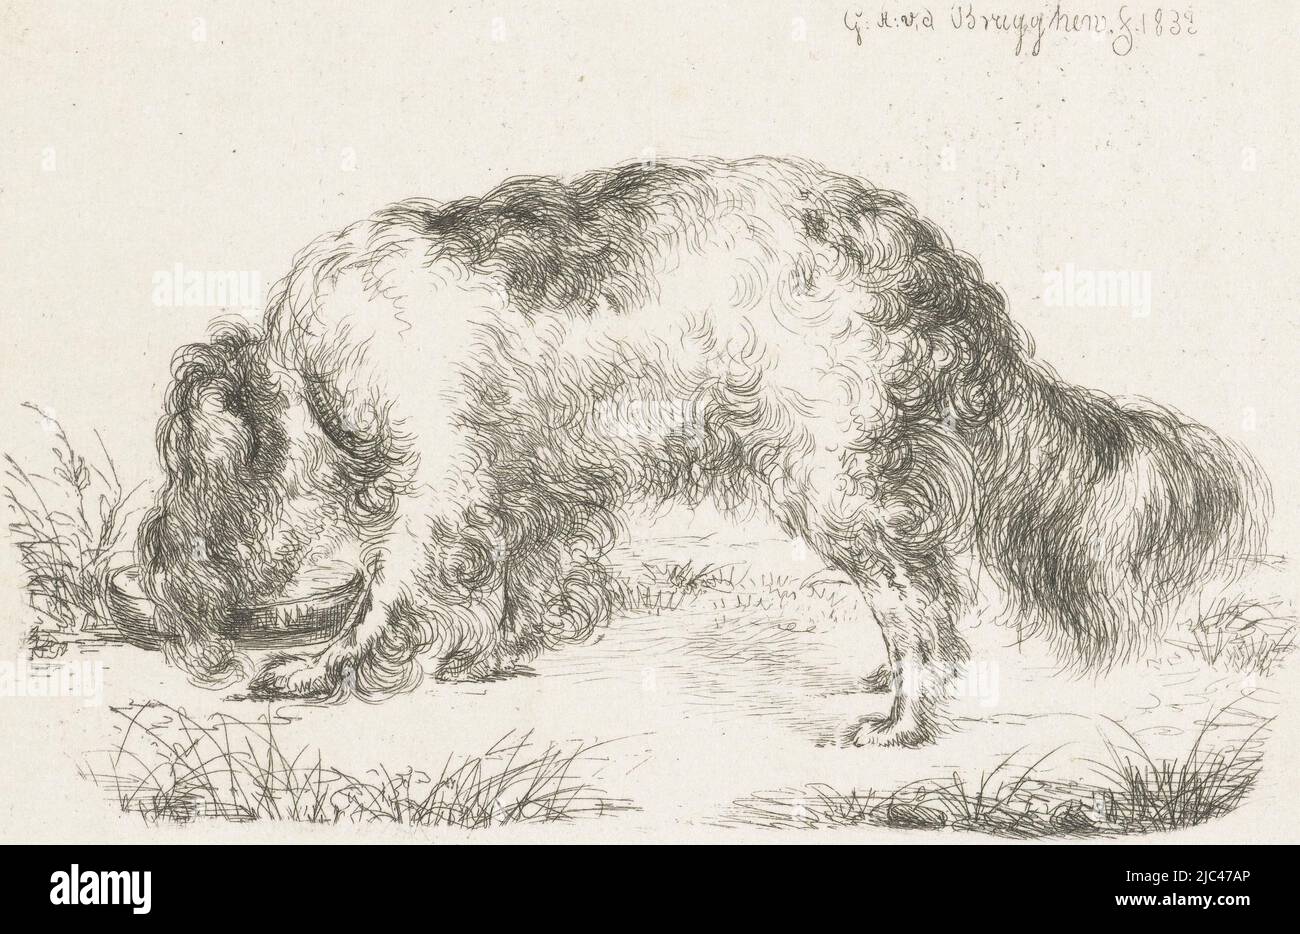 Drinking Dog, print maker: Guillaume Anne van der Brugghen, (mentioned on object), Guillaume Anne van der Brugghen, Netherlands, 1832, paper, etching, h 81 mm × w 120 mm Stock Photo